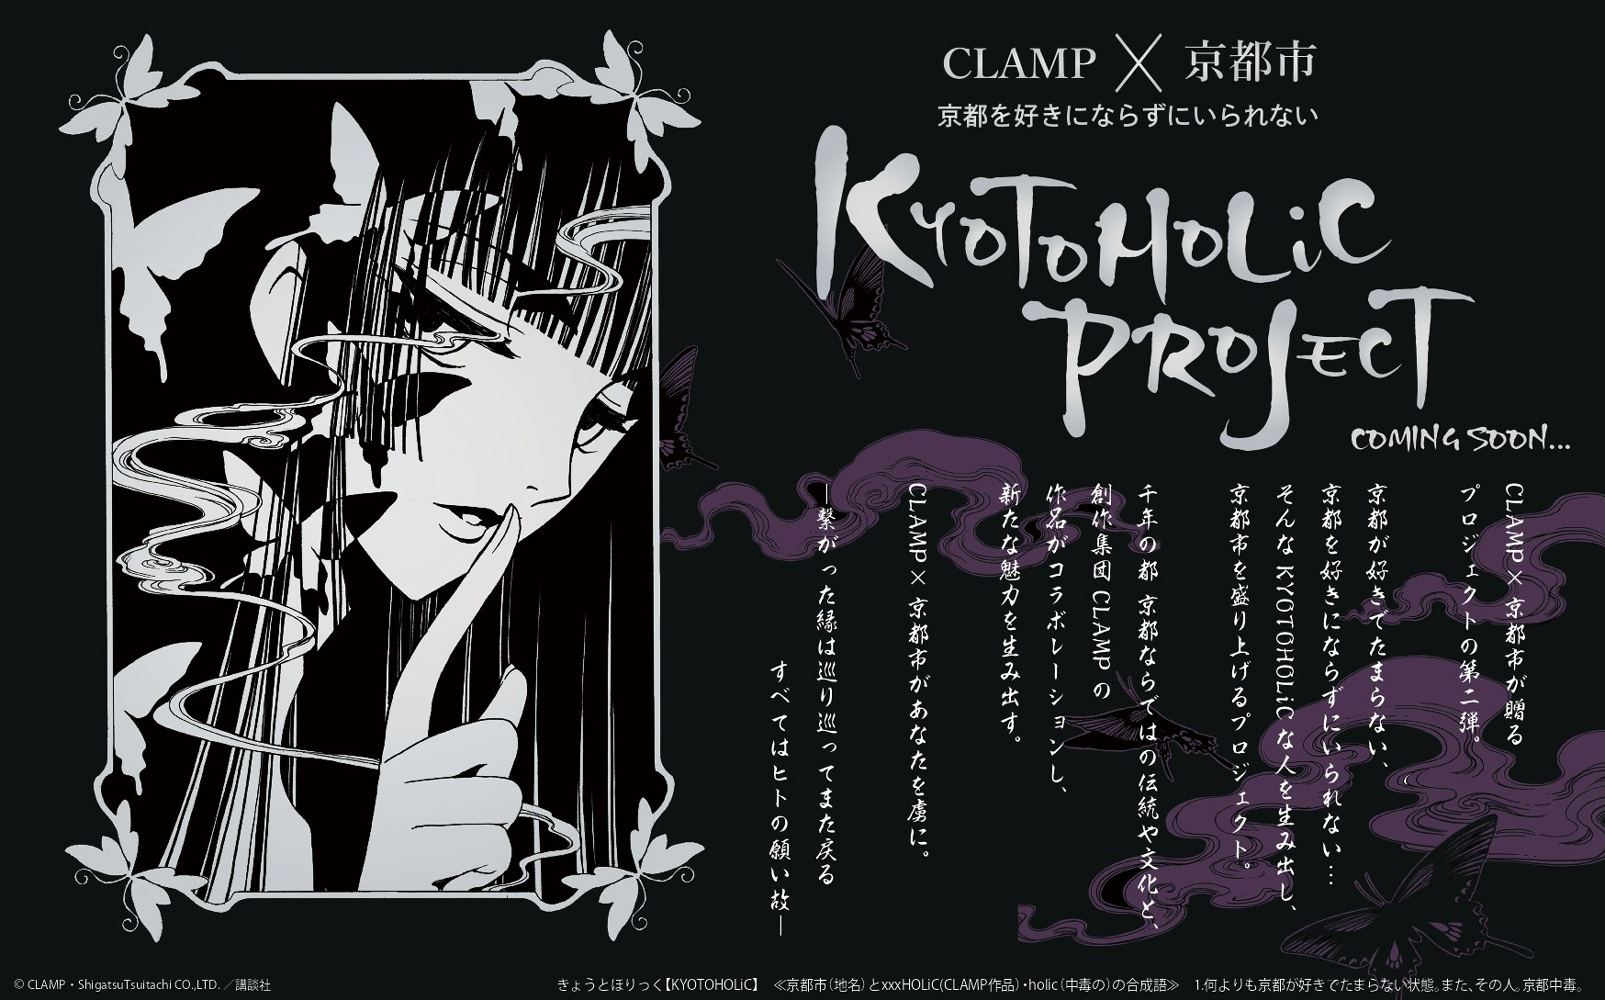 CLAMPの名作×京都 “きょうとほりっく”プロジェクト始動で「嬉しすぎてどうしよう」